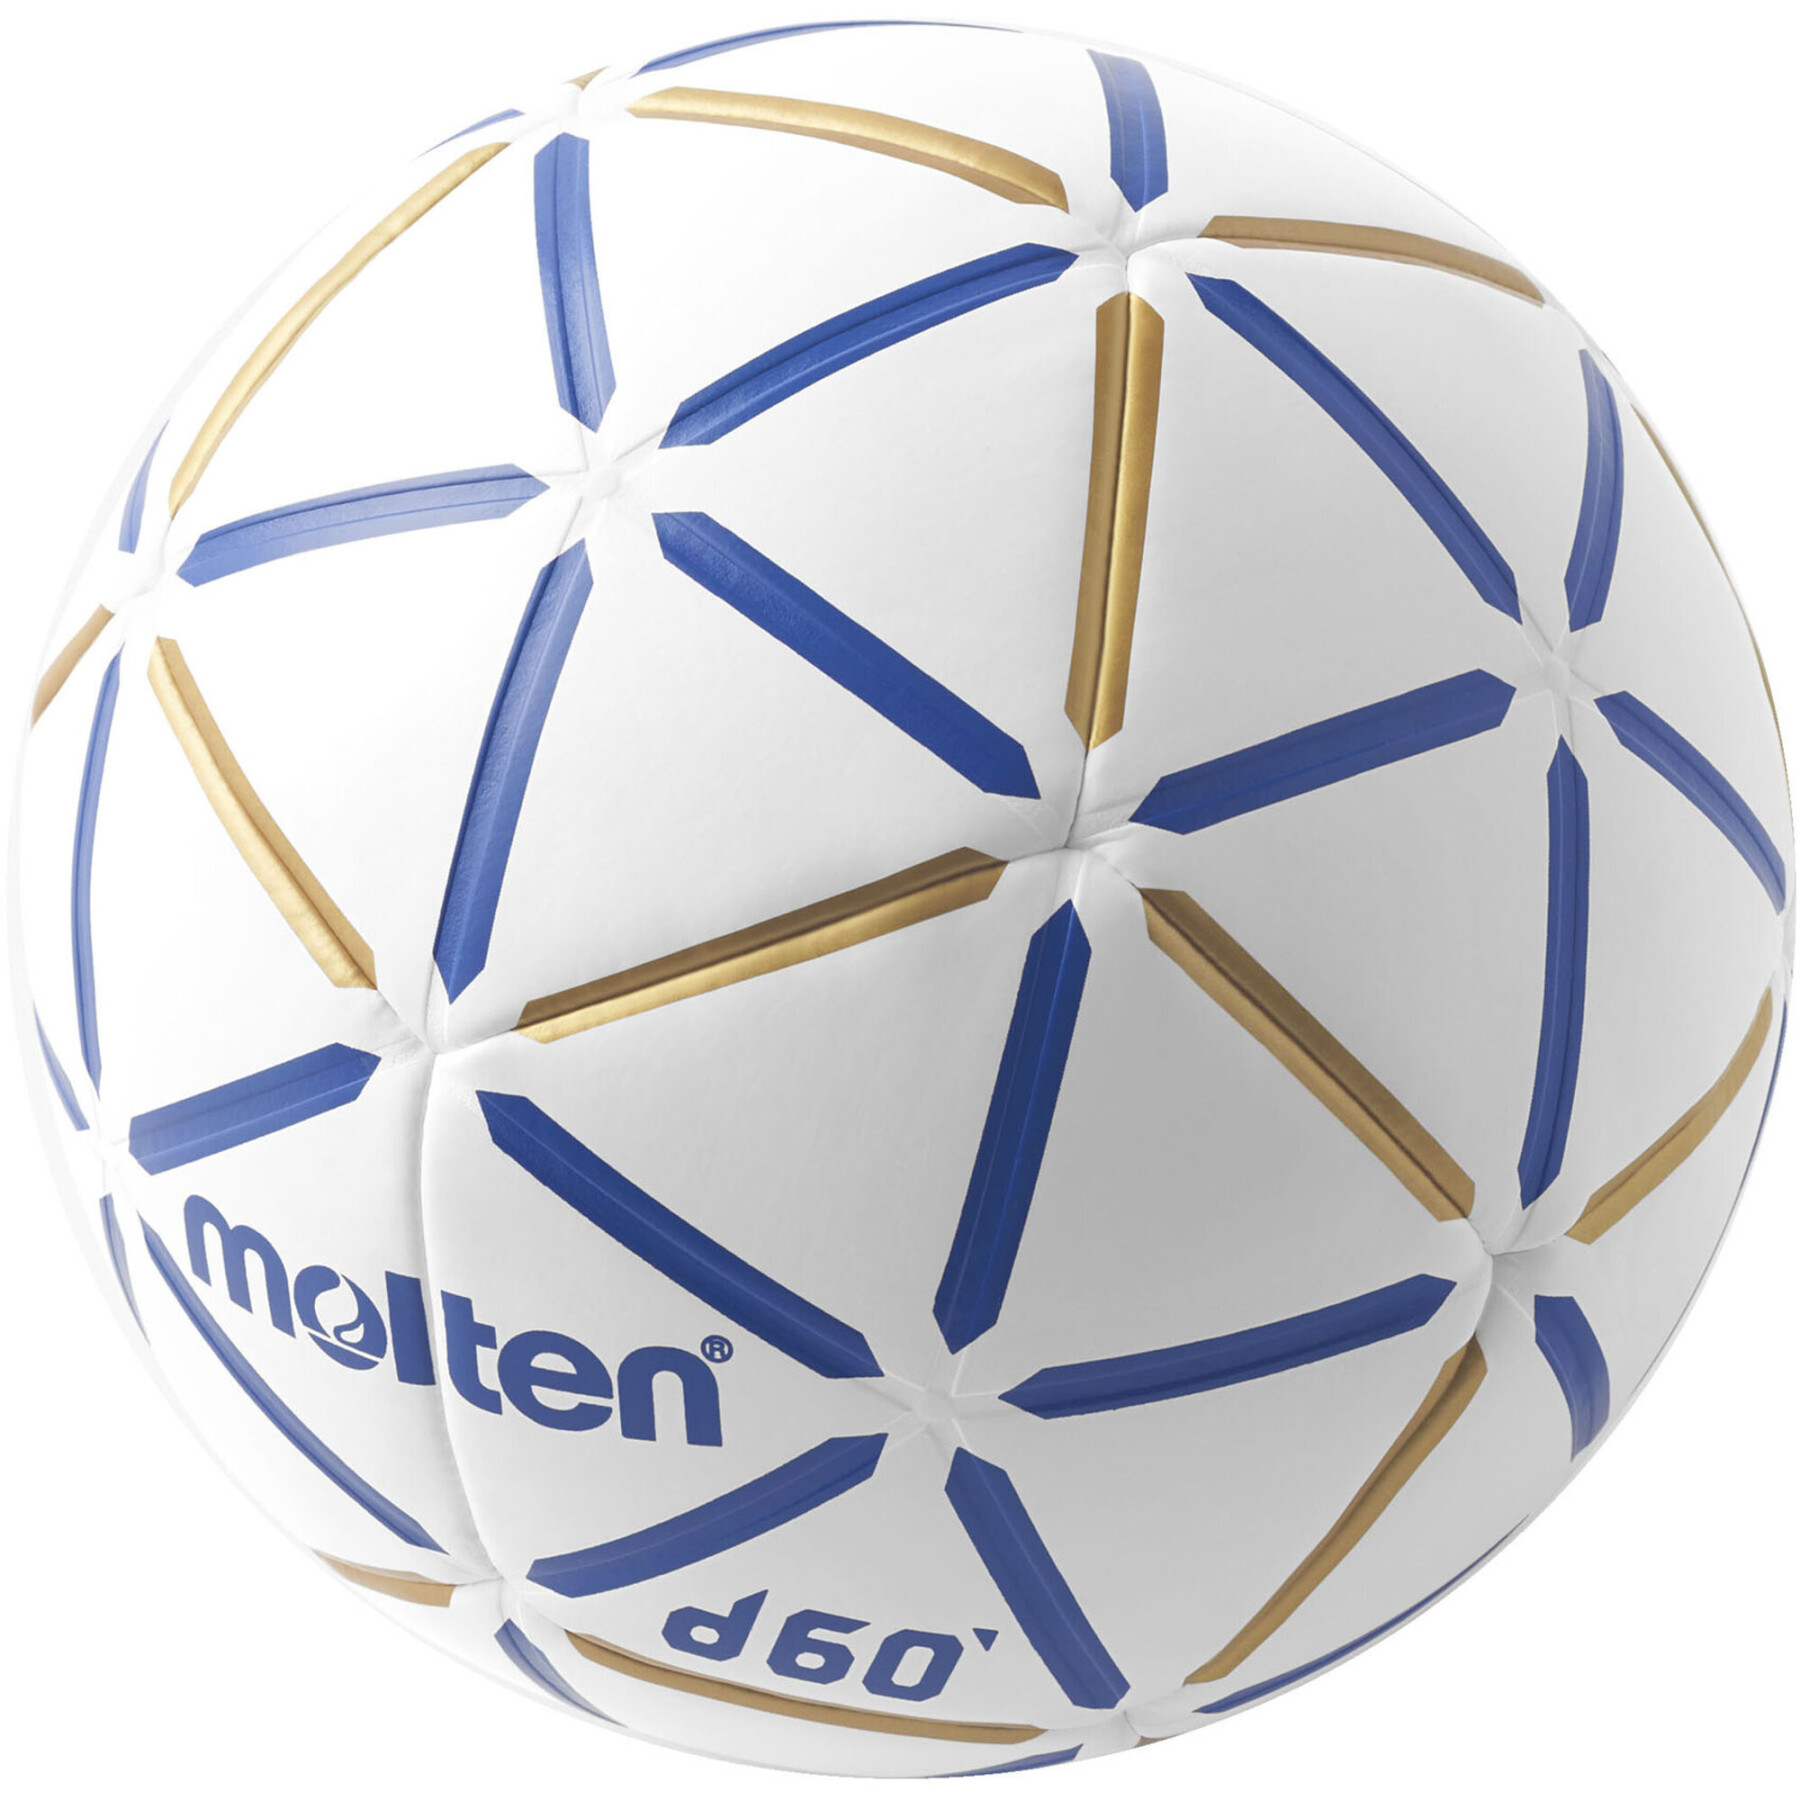 Pallone da Pallamano Molten D60